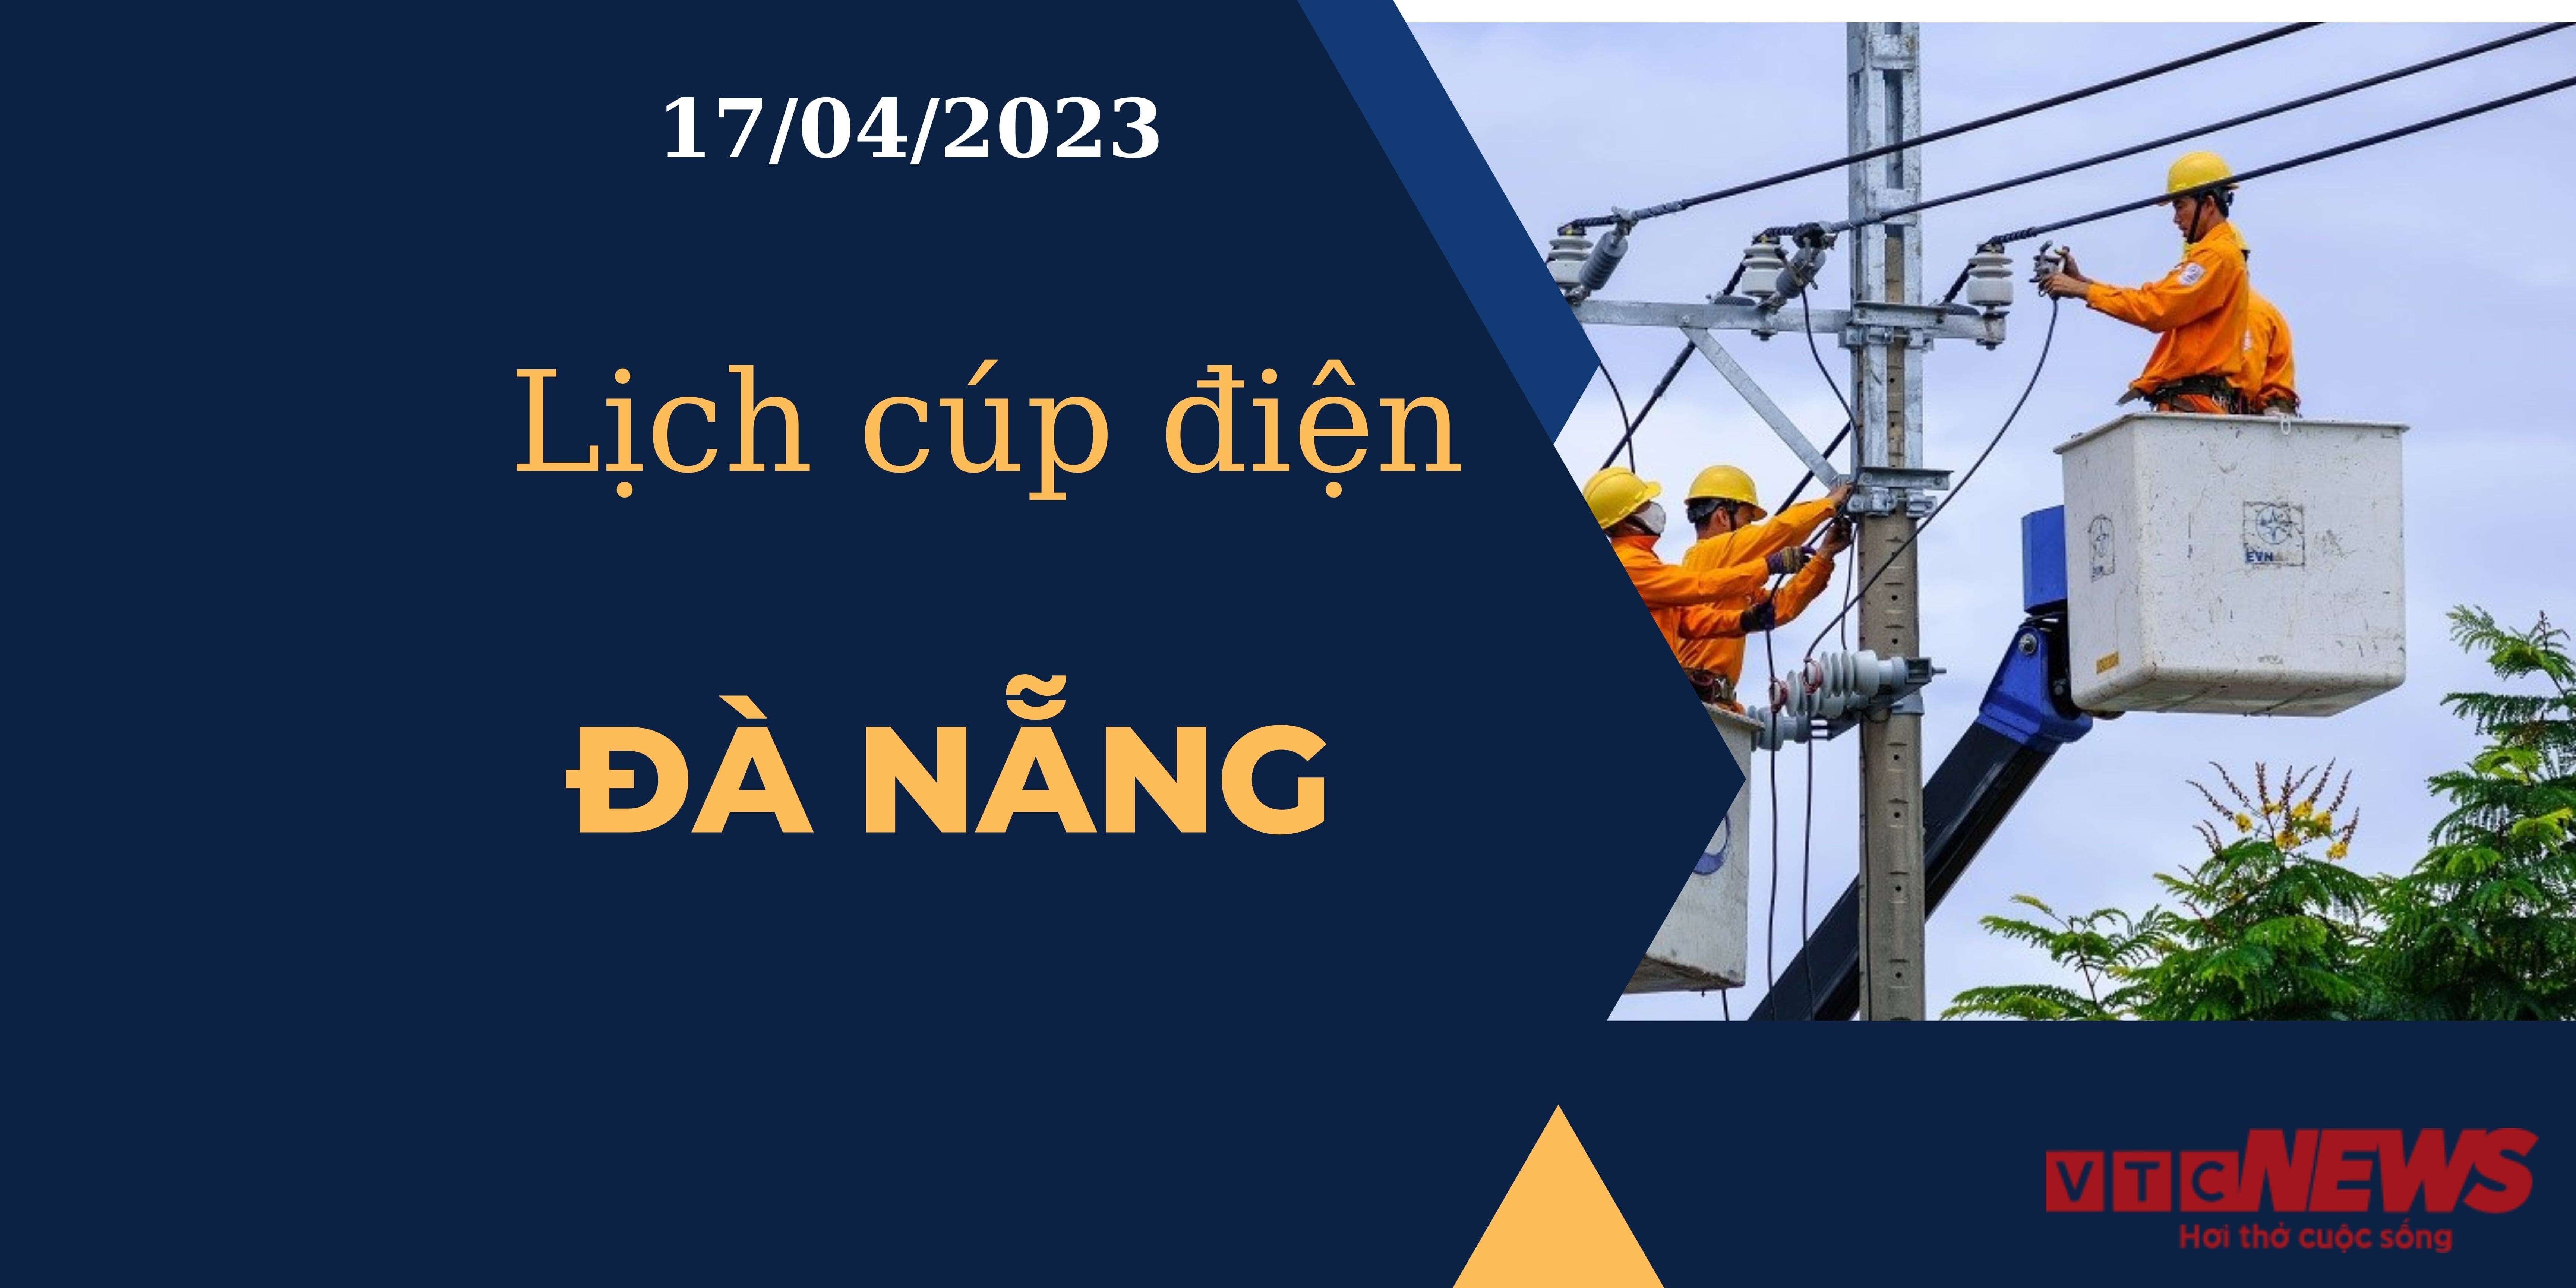 Lịch cúp điện hôm nay tại Đà Nẵng ngày 17/04/2023 - 1